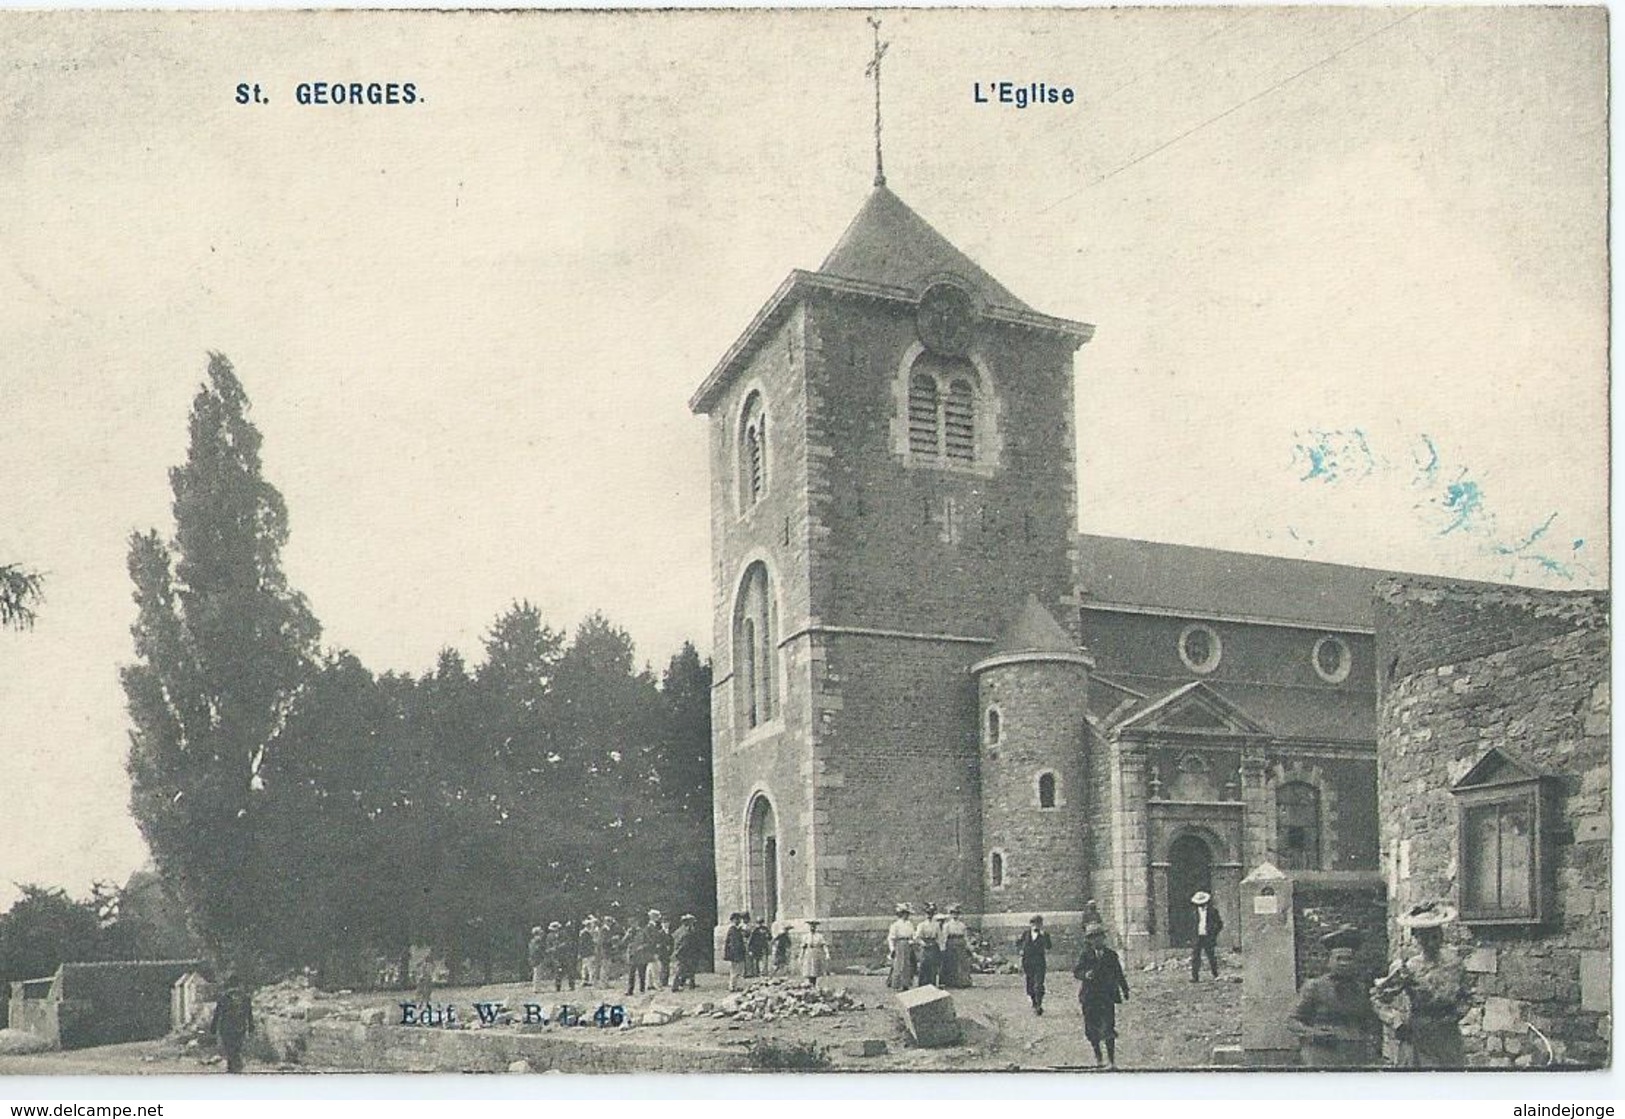 Saint Georges Sur Meuse - L'Eglise - Edit. W.B.L. 46 - 1906 - Saint-Georges-sur-Meuse